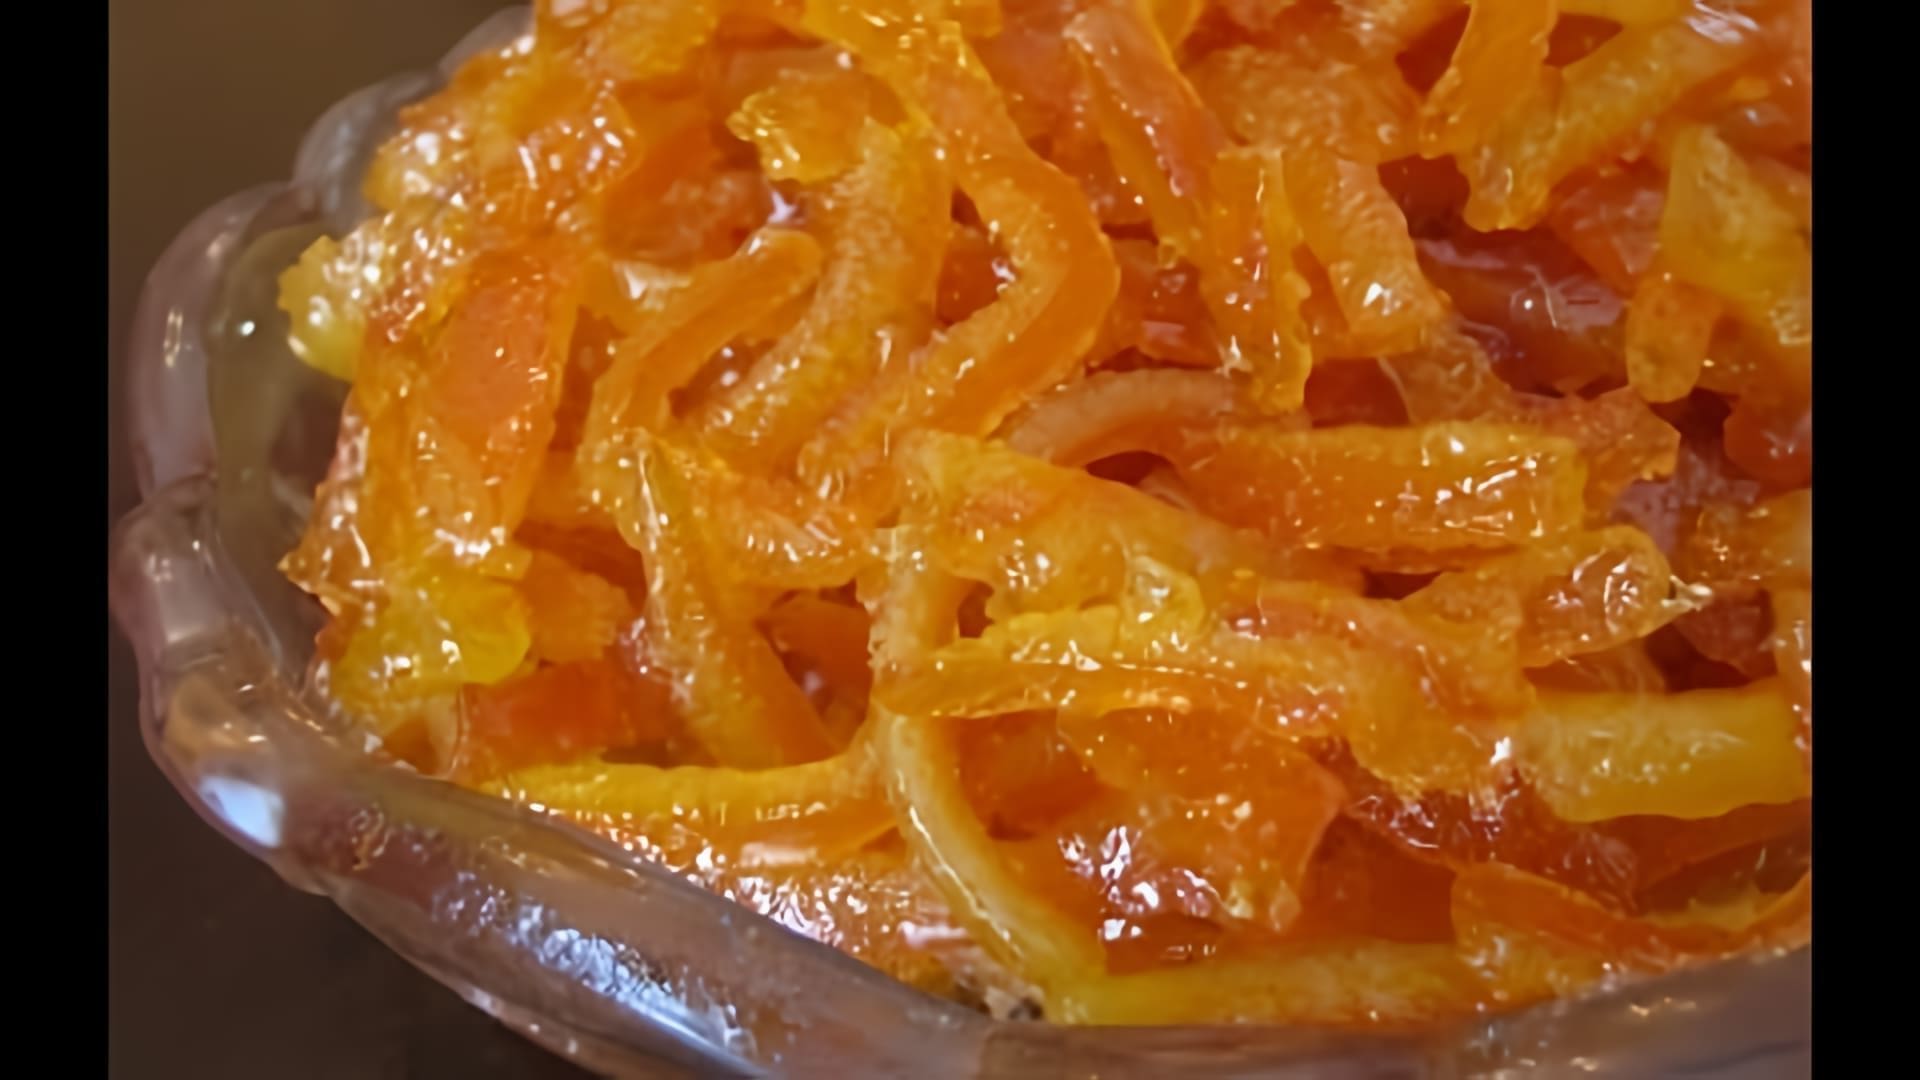 В этом видео демонстрируется процесс приготовления цукатов из апельсиновых корочек